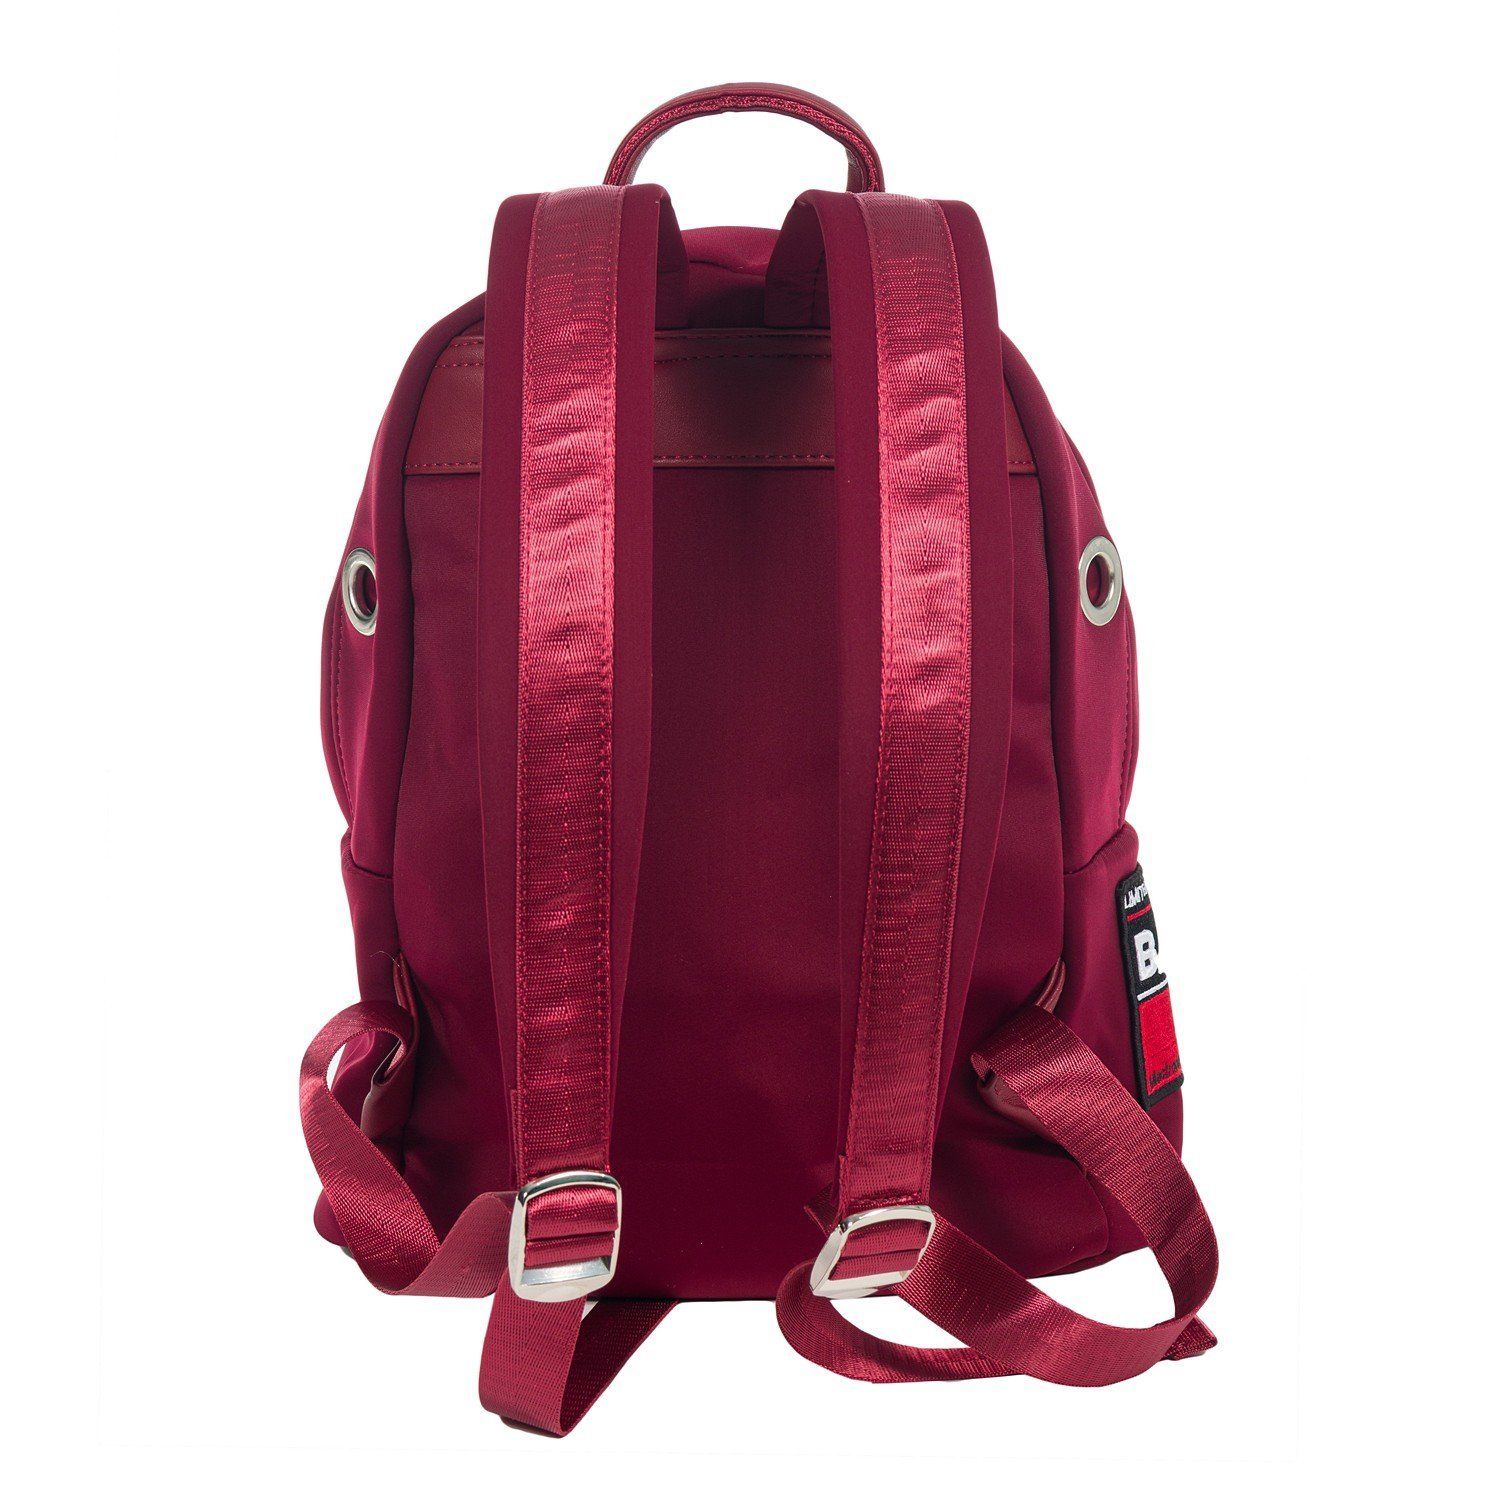 Рюкзак мужской городской, бордовый, с широкими лямками, объем 20 л